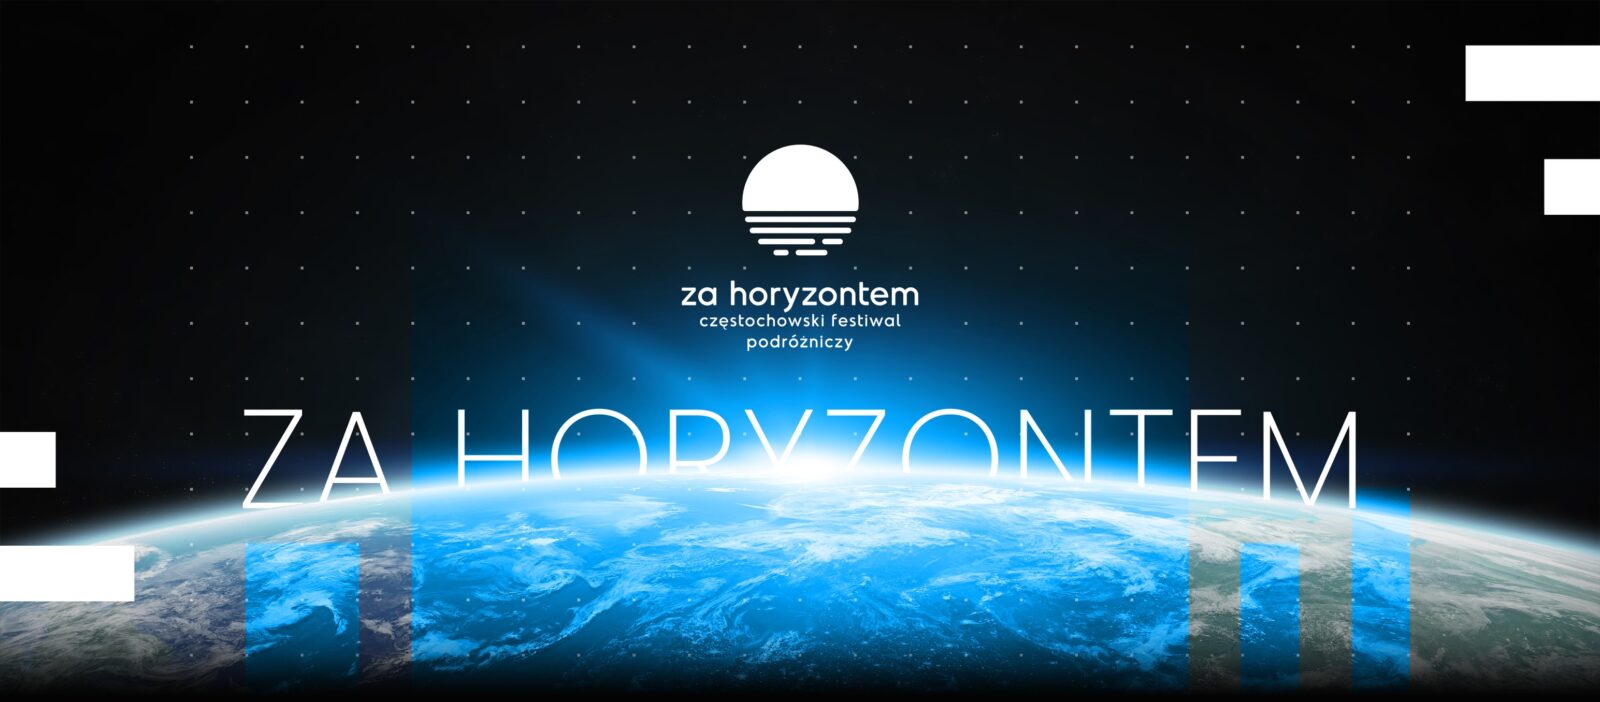 5 maja startuje Częstochowski Festiwal Podróżniczy "Za Horyzontem" 4